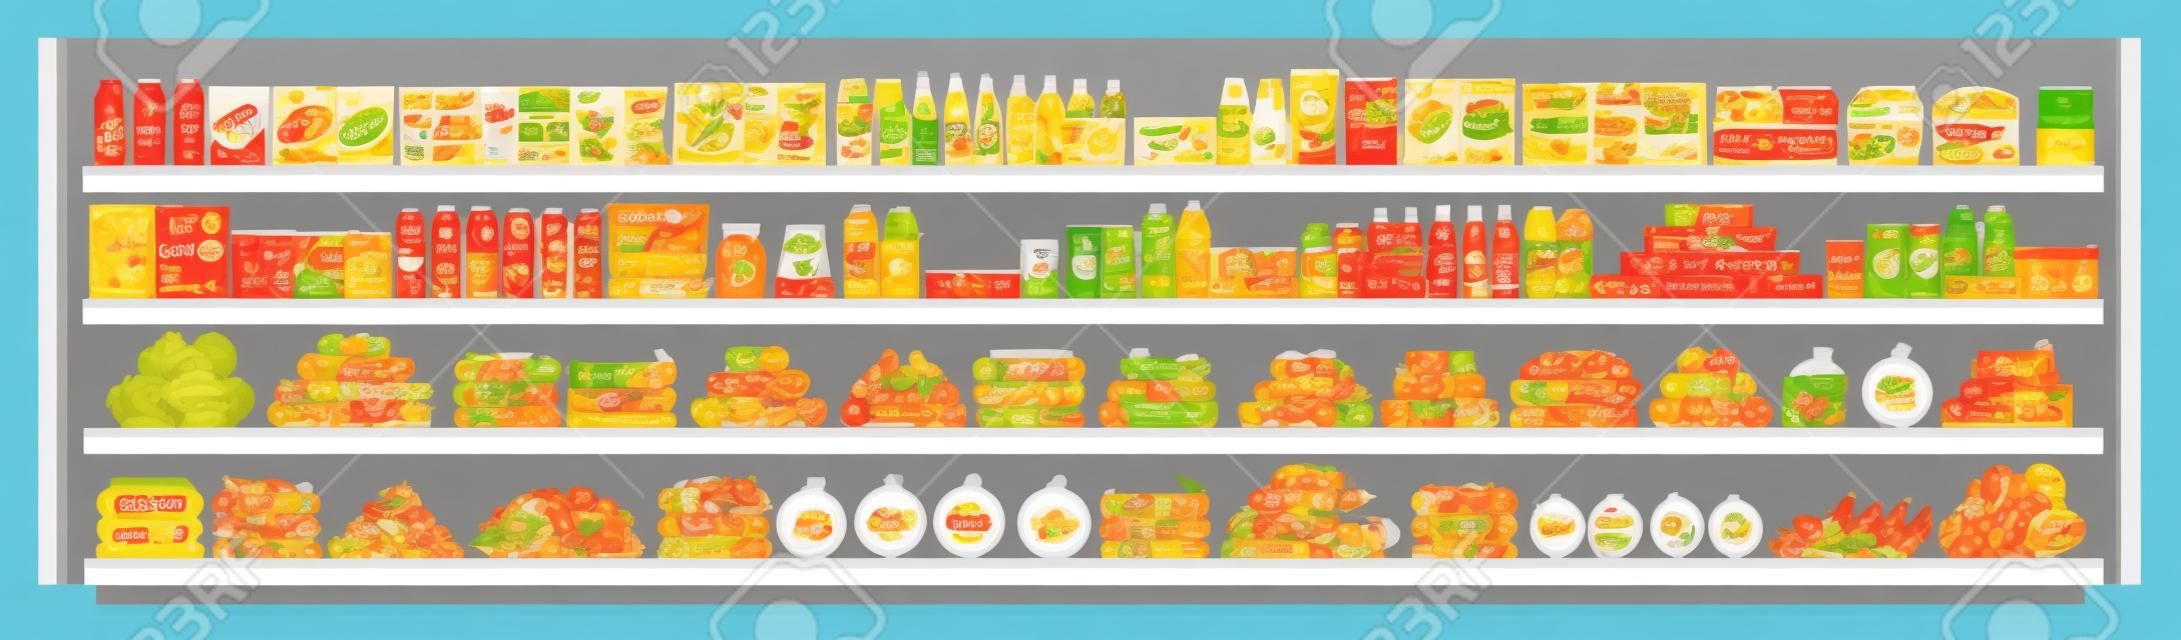 Articles d'épicerie sur les étagères des supermarchés et offres complètes avec un assortiment de nourriture et de boissons illustration vectorielle à plat d'arrière-plan harmonieux. Concept de magasinage et de vente au détail.